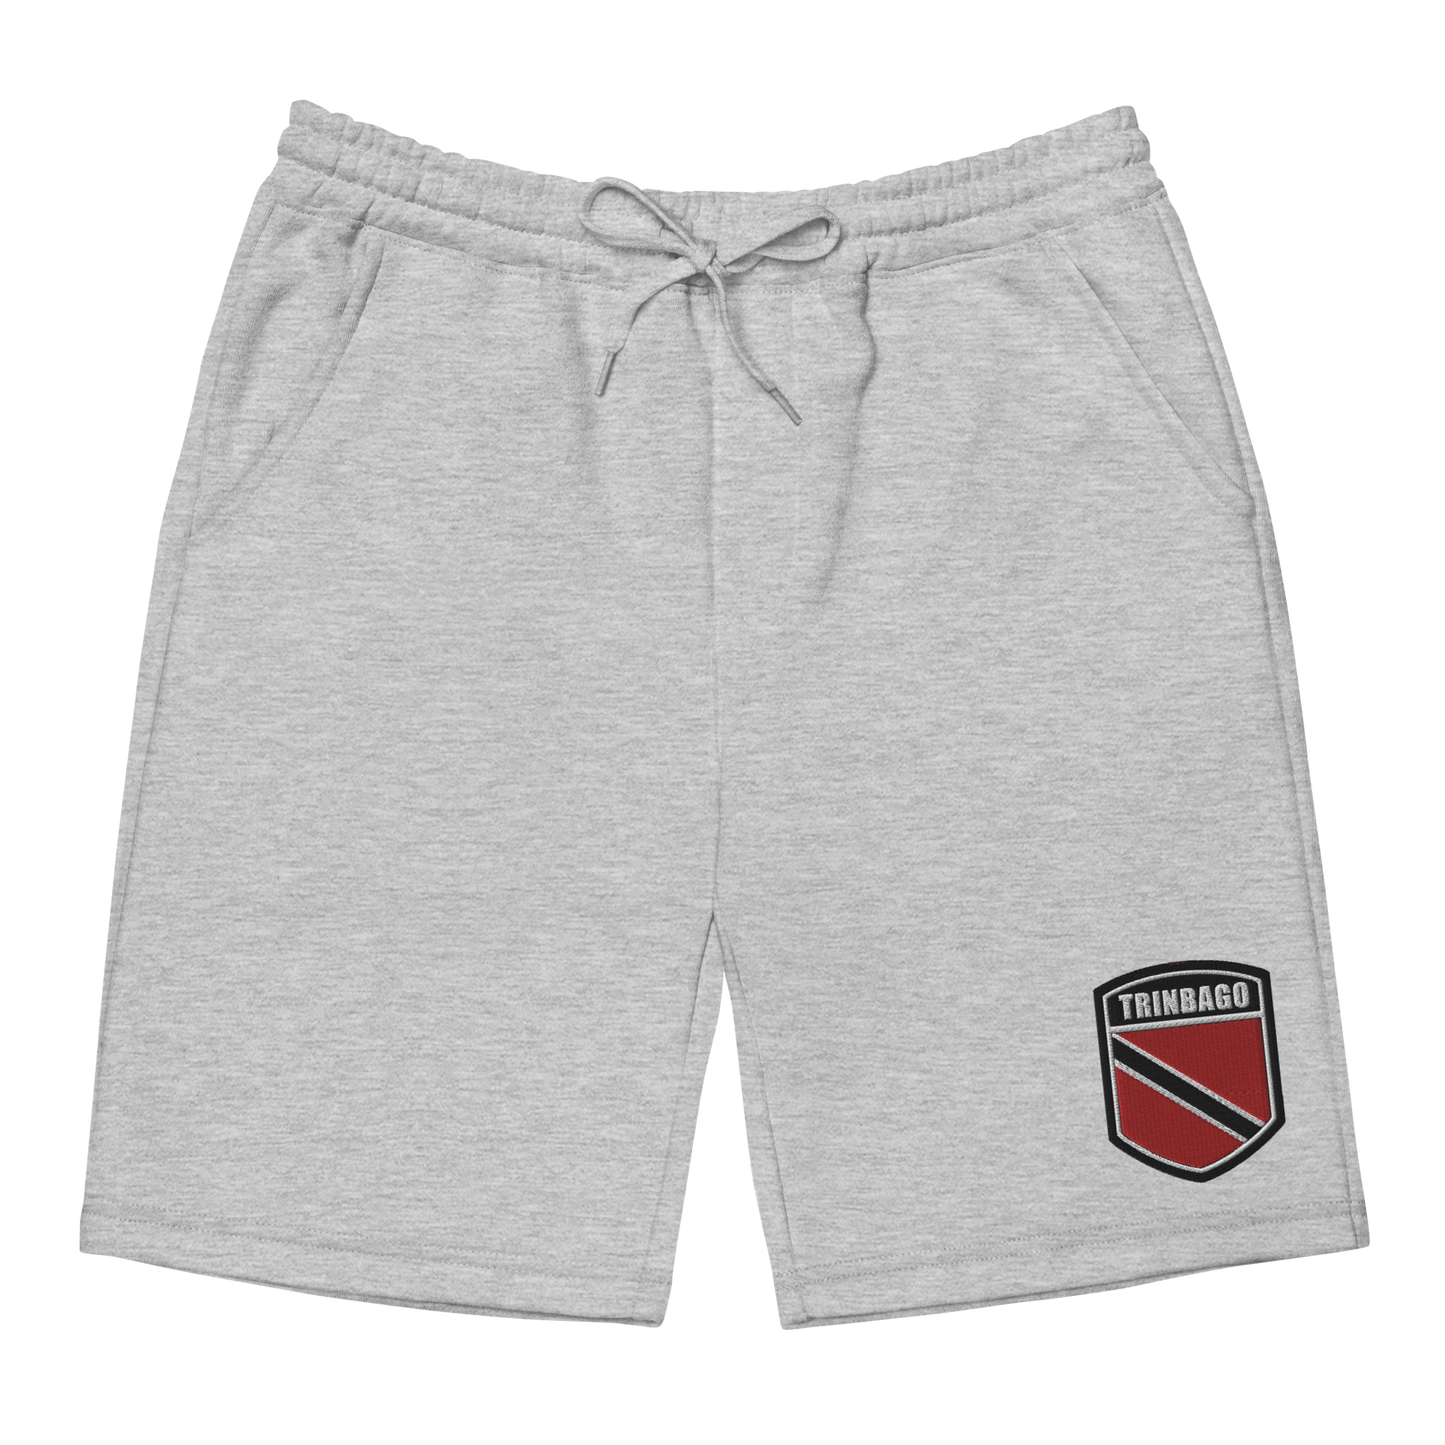 Trinbago Men's fleece shorts